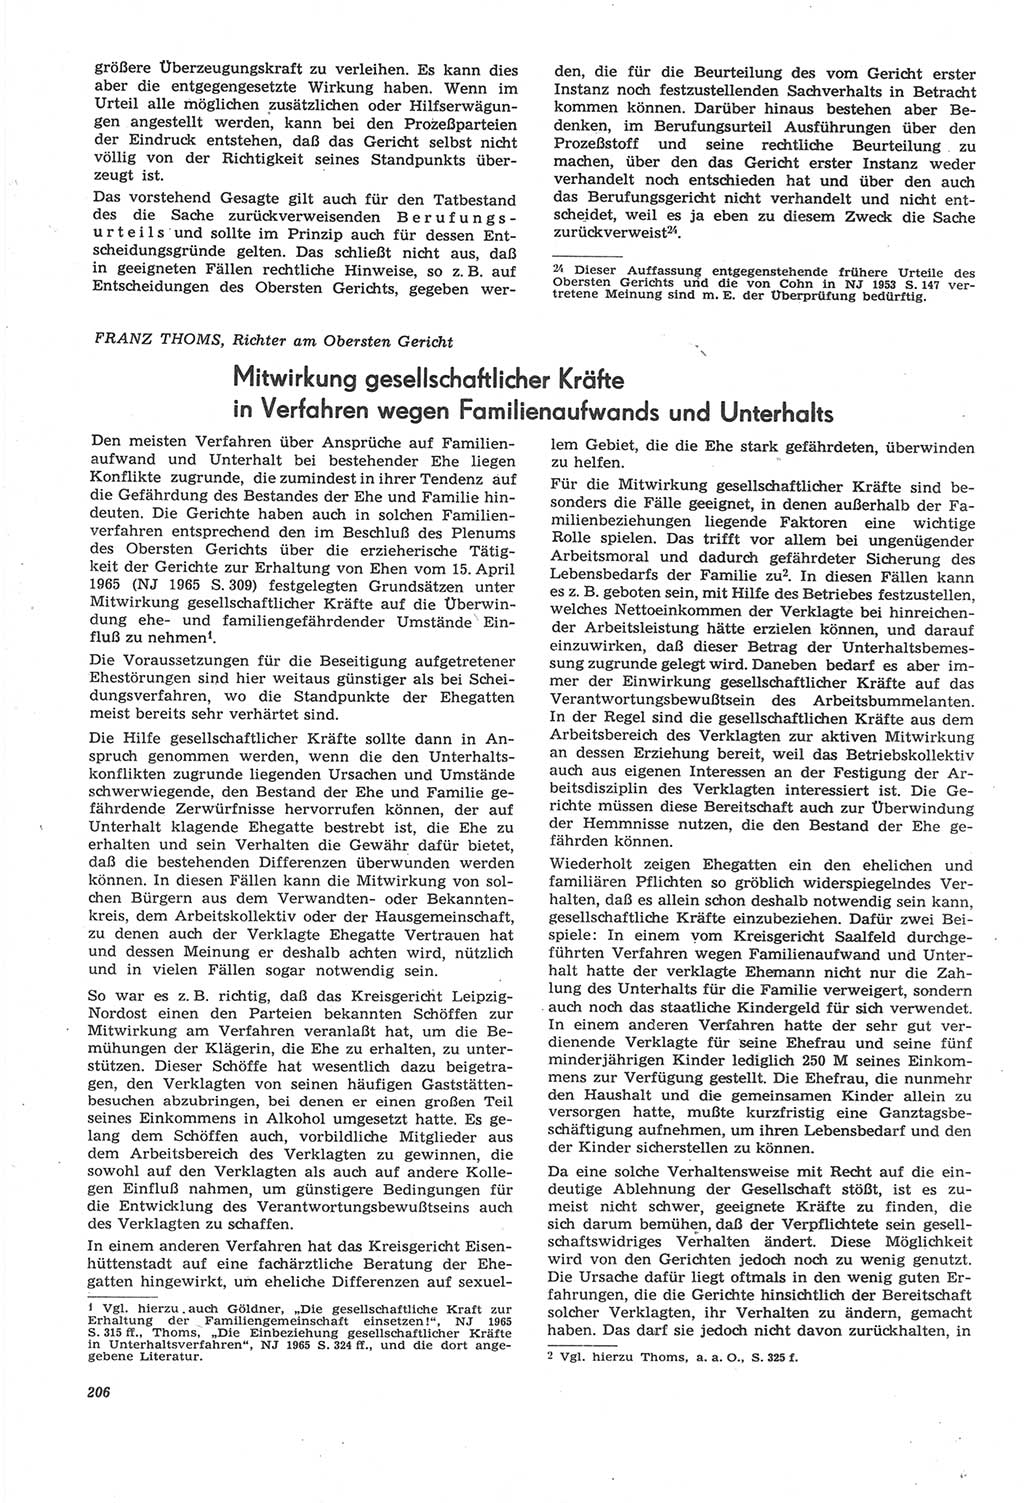 Neue Justiz (NJ), Zeitschrift für Recht und Rechtswissenschaft [Deutsche Demokratische Republik (DDR)], 22. Jahrgang 1968, Seite 206 (NJ DDR 1968, S. 206)